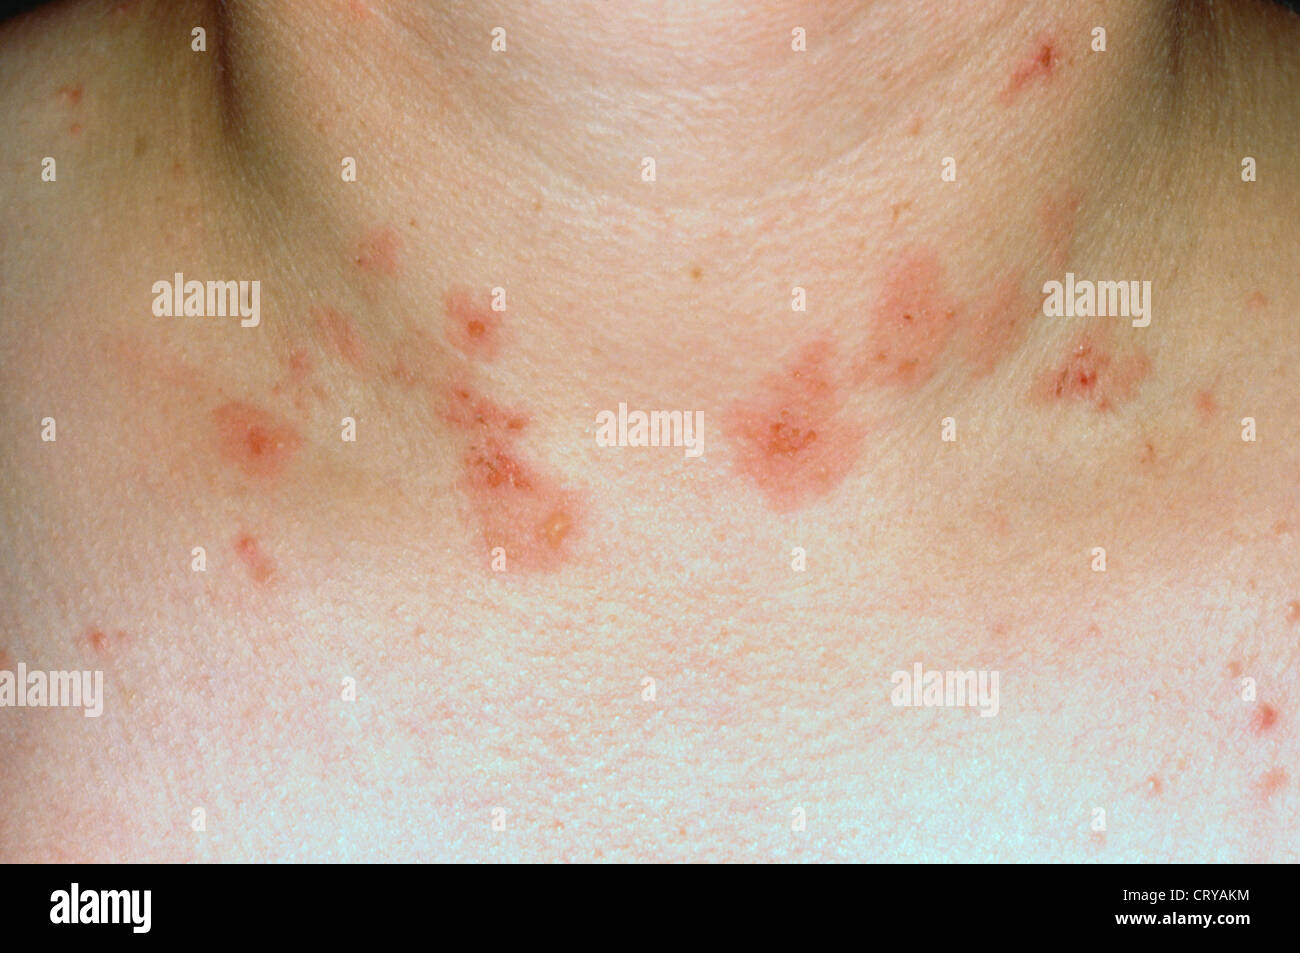 Aprender sobre 38+ imagem dermatite herpetiforme fotos - br ...